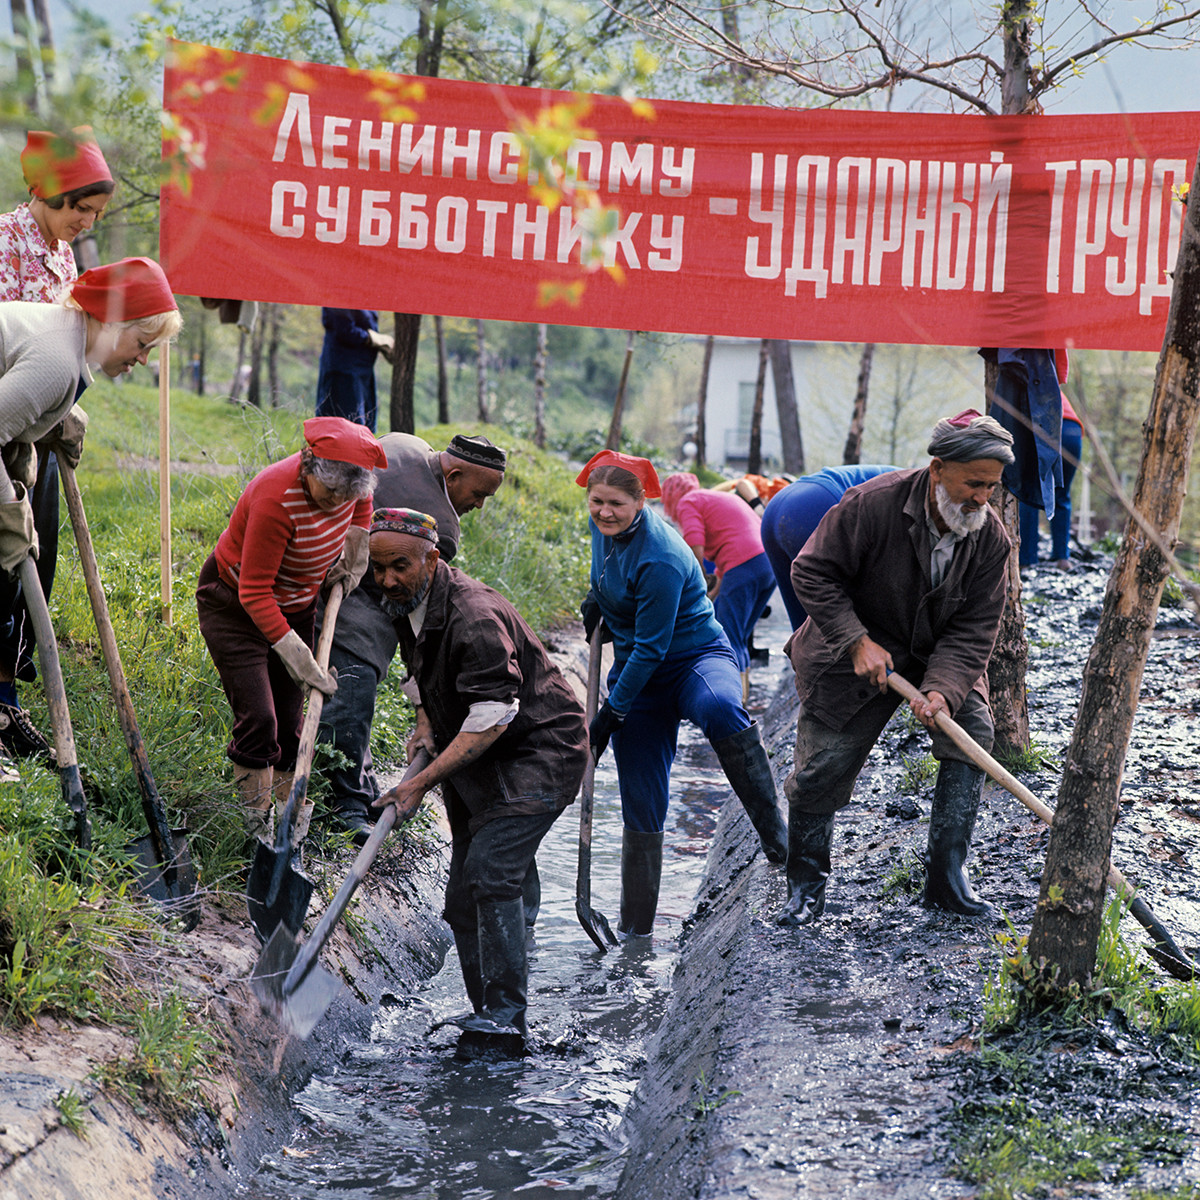 レーニン共産党スボートニクに参加するタジキスタン共和国の人々、1978年